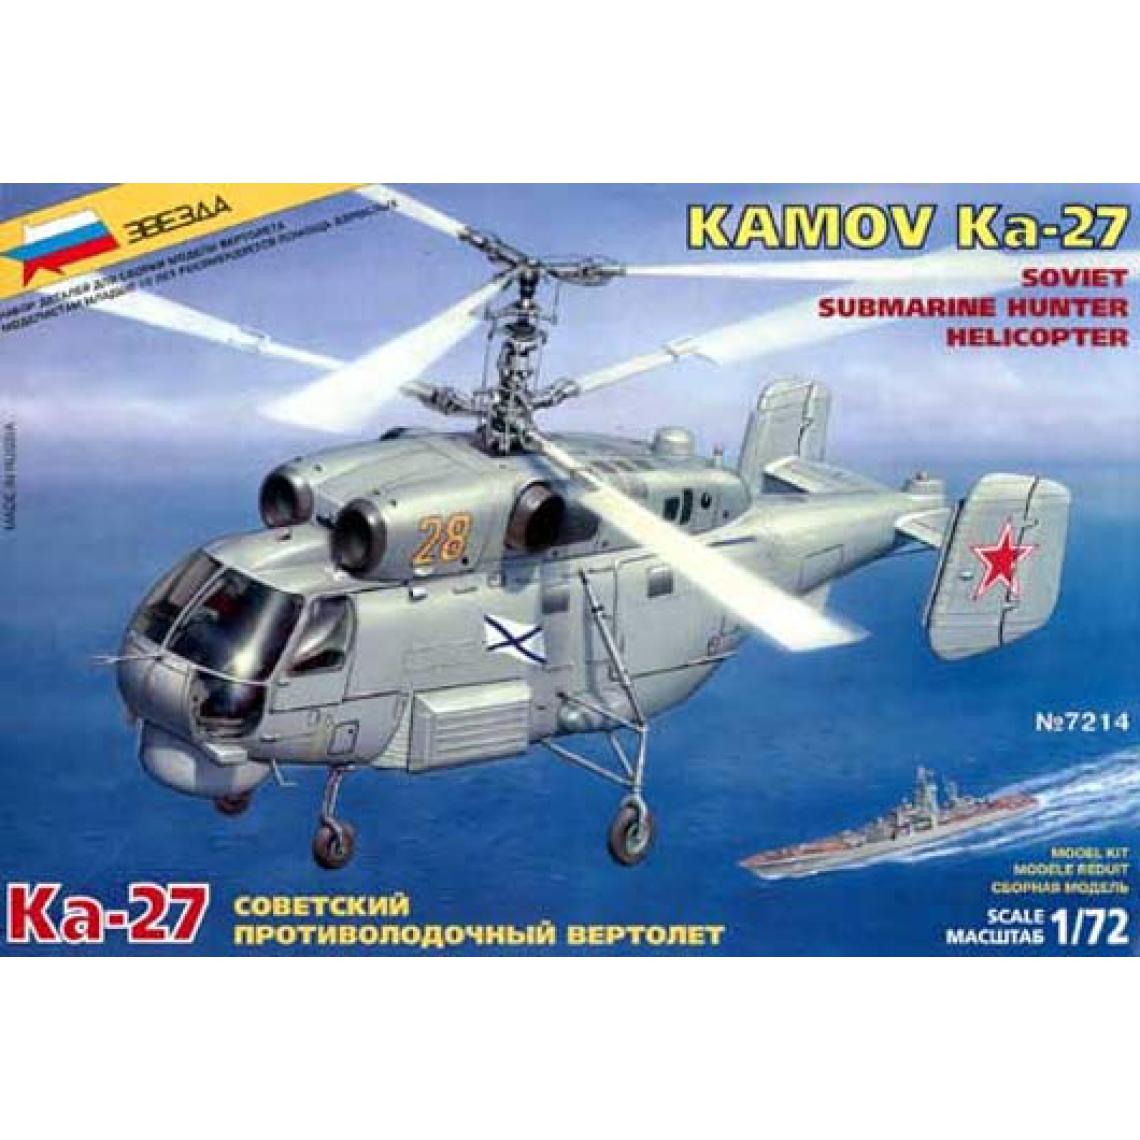 Zvezda - Kamox Ka-27 ASM Zvezda 1/72 - Avions RC